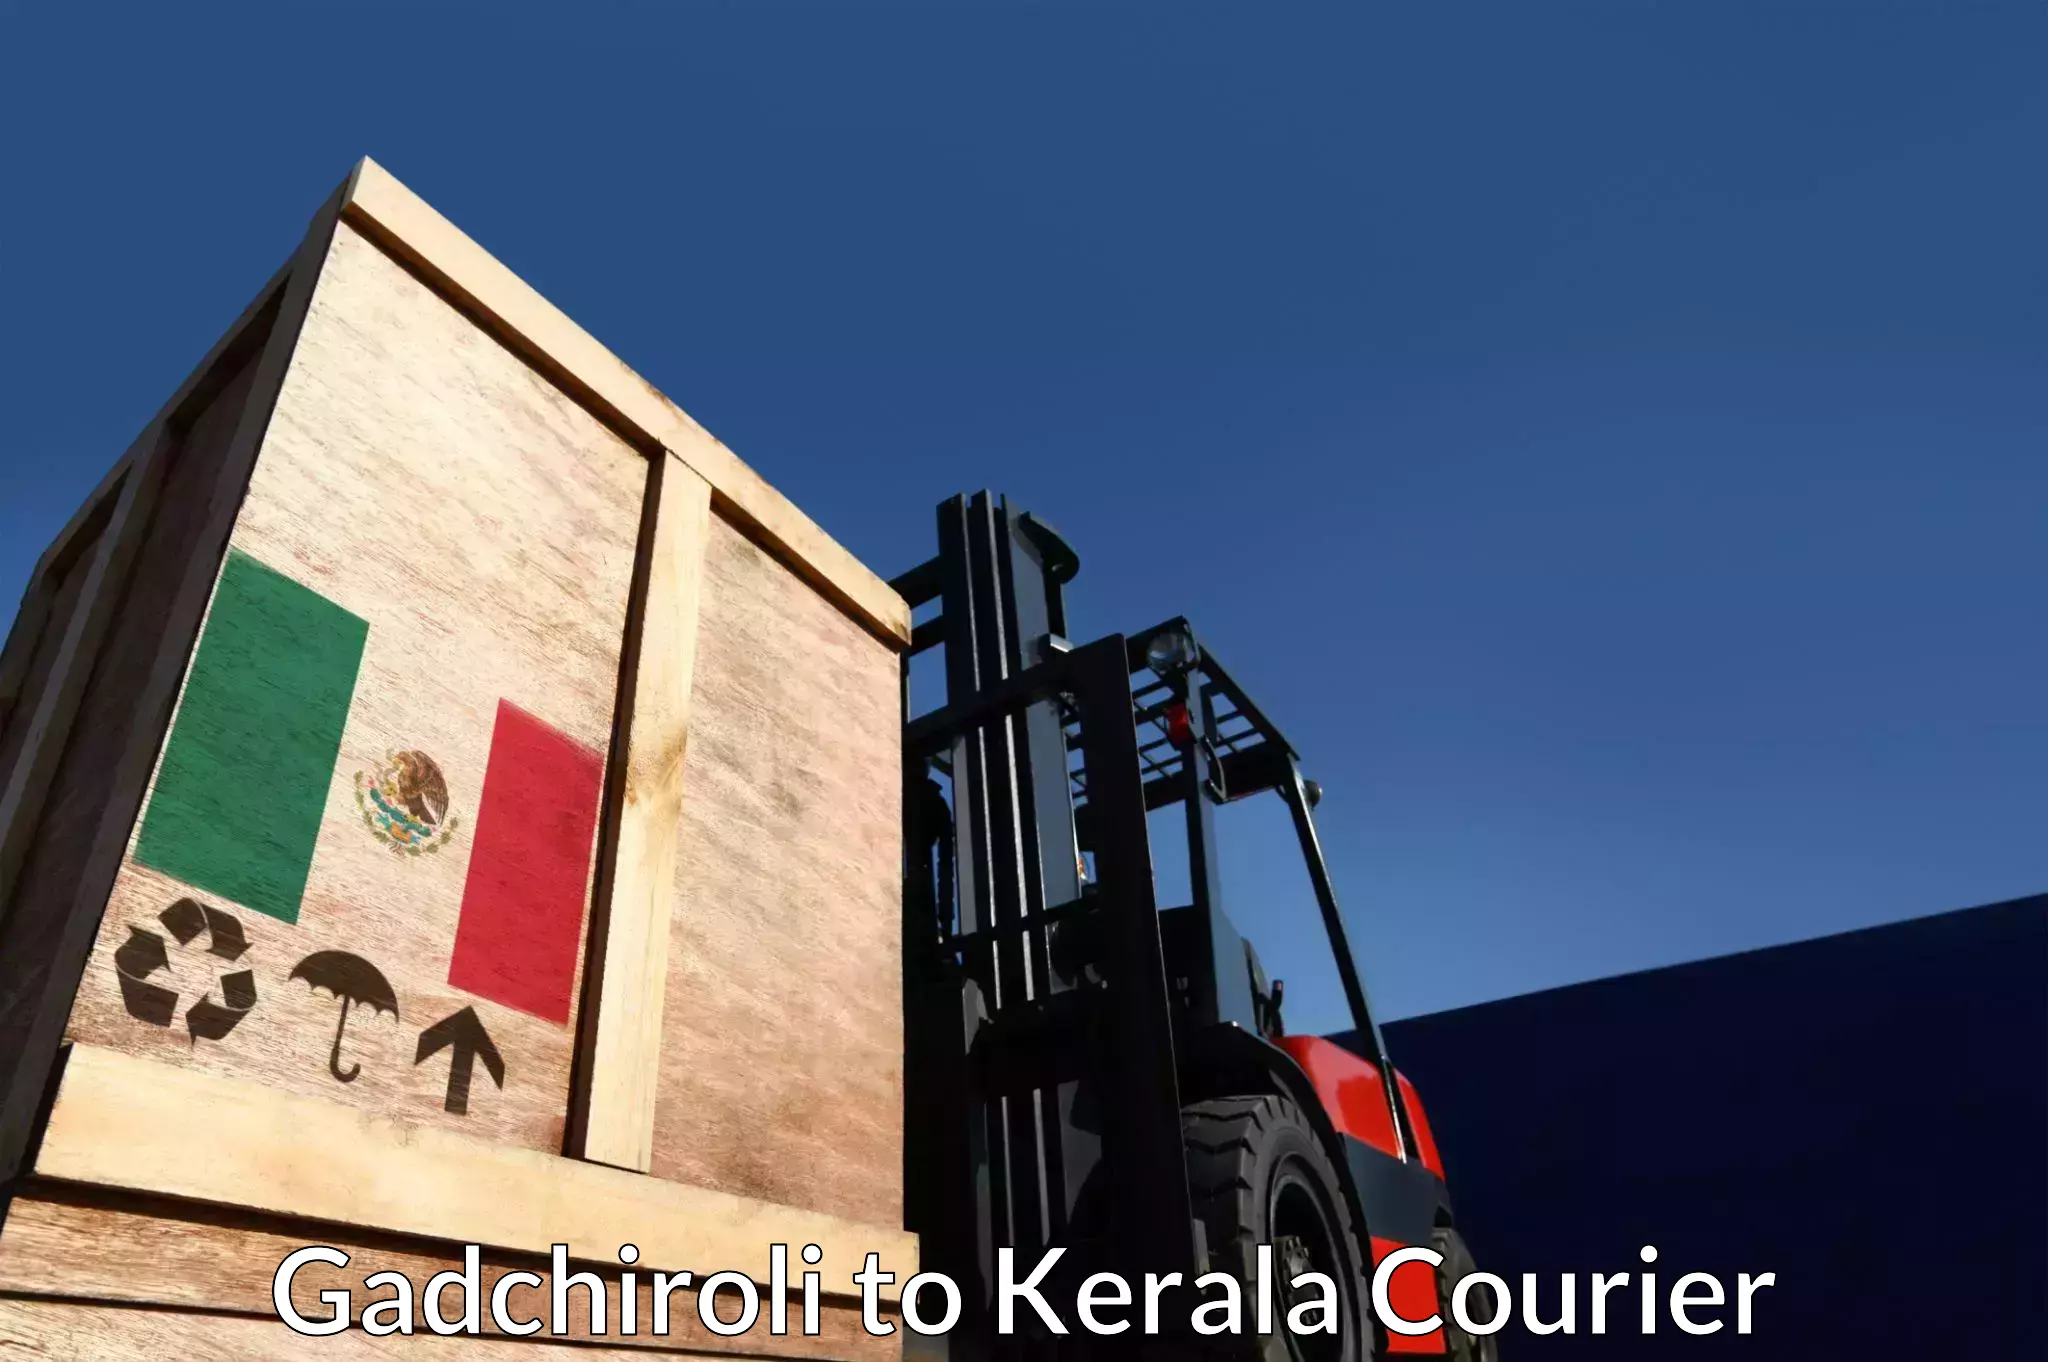 Secure shipping methods Gadchiroli to Cochin Port Kochi